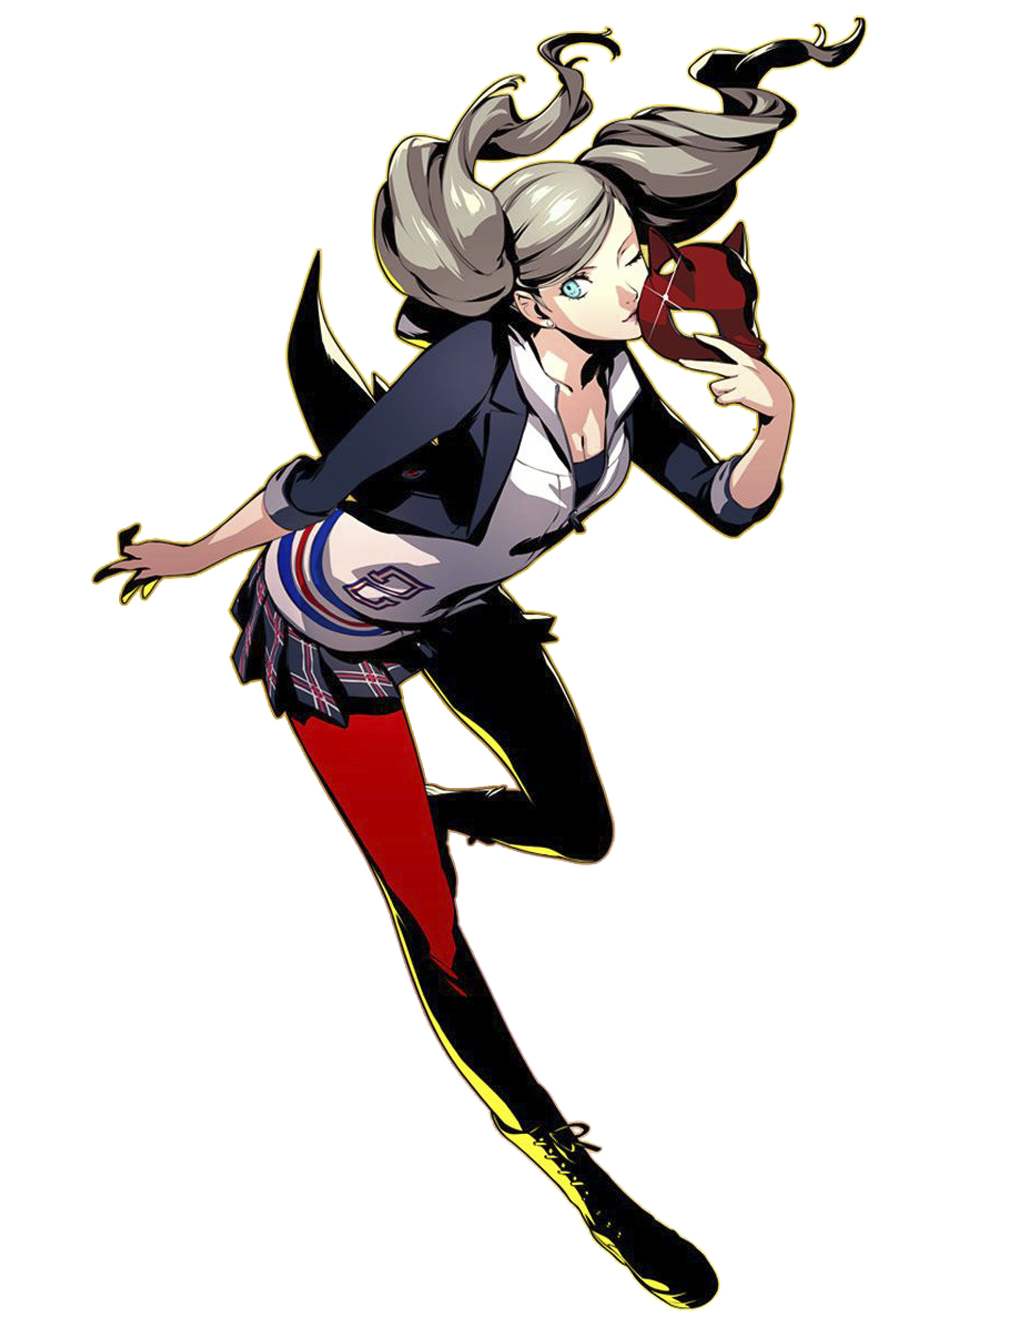 Persona 5 - umetnički prikaz likova